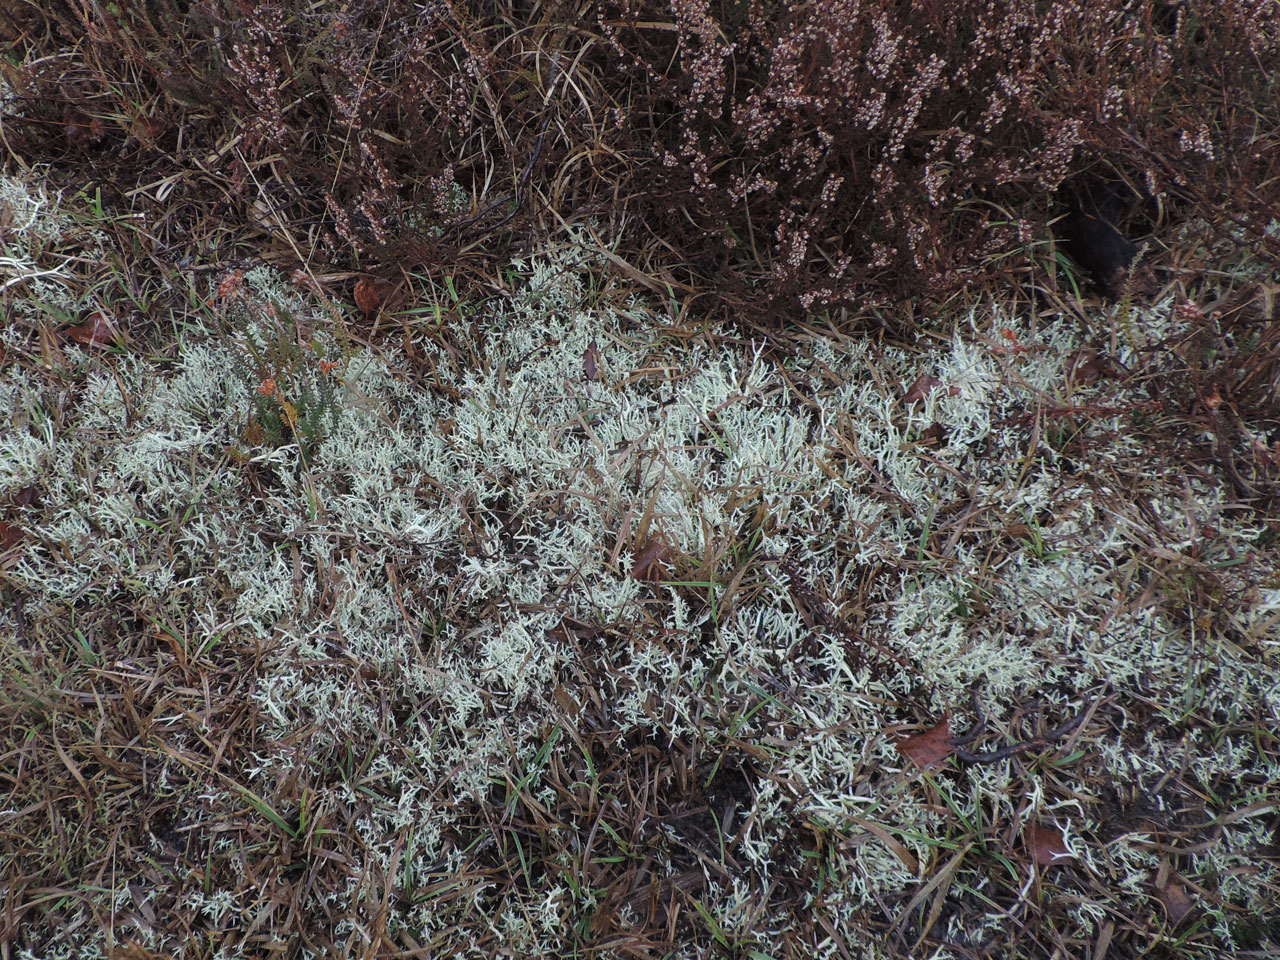 Cladonia zopfii, The Weir, New Forest